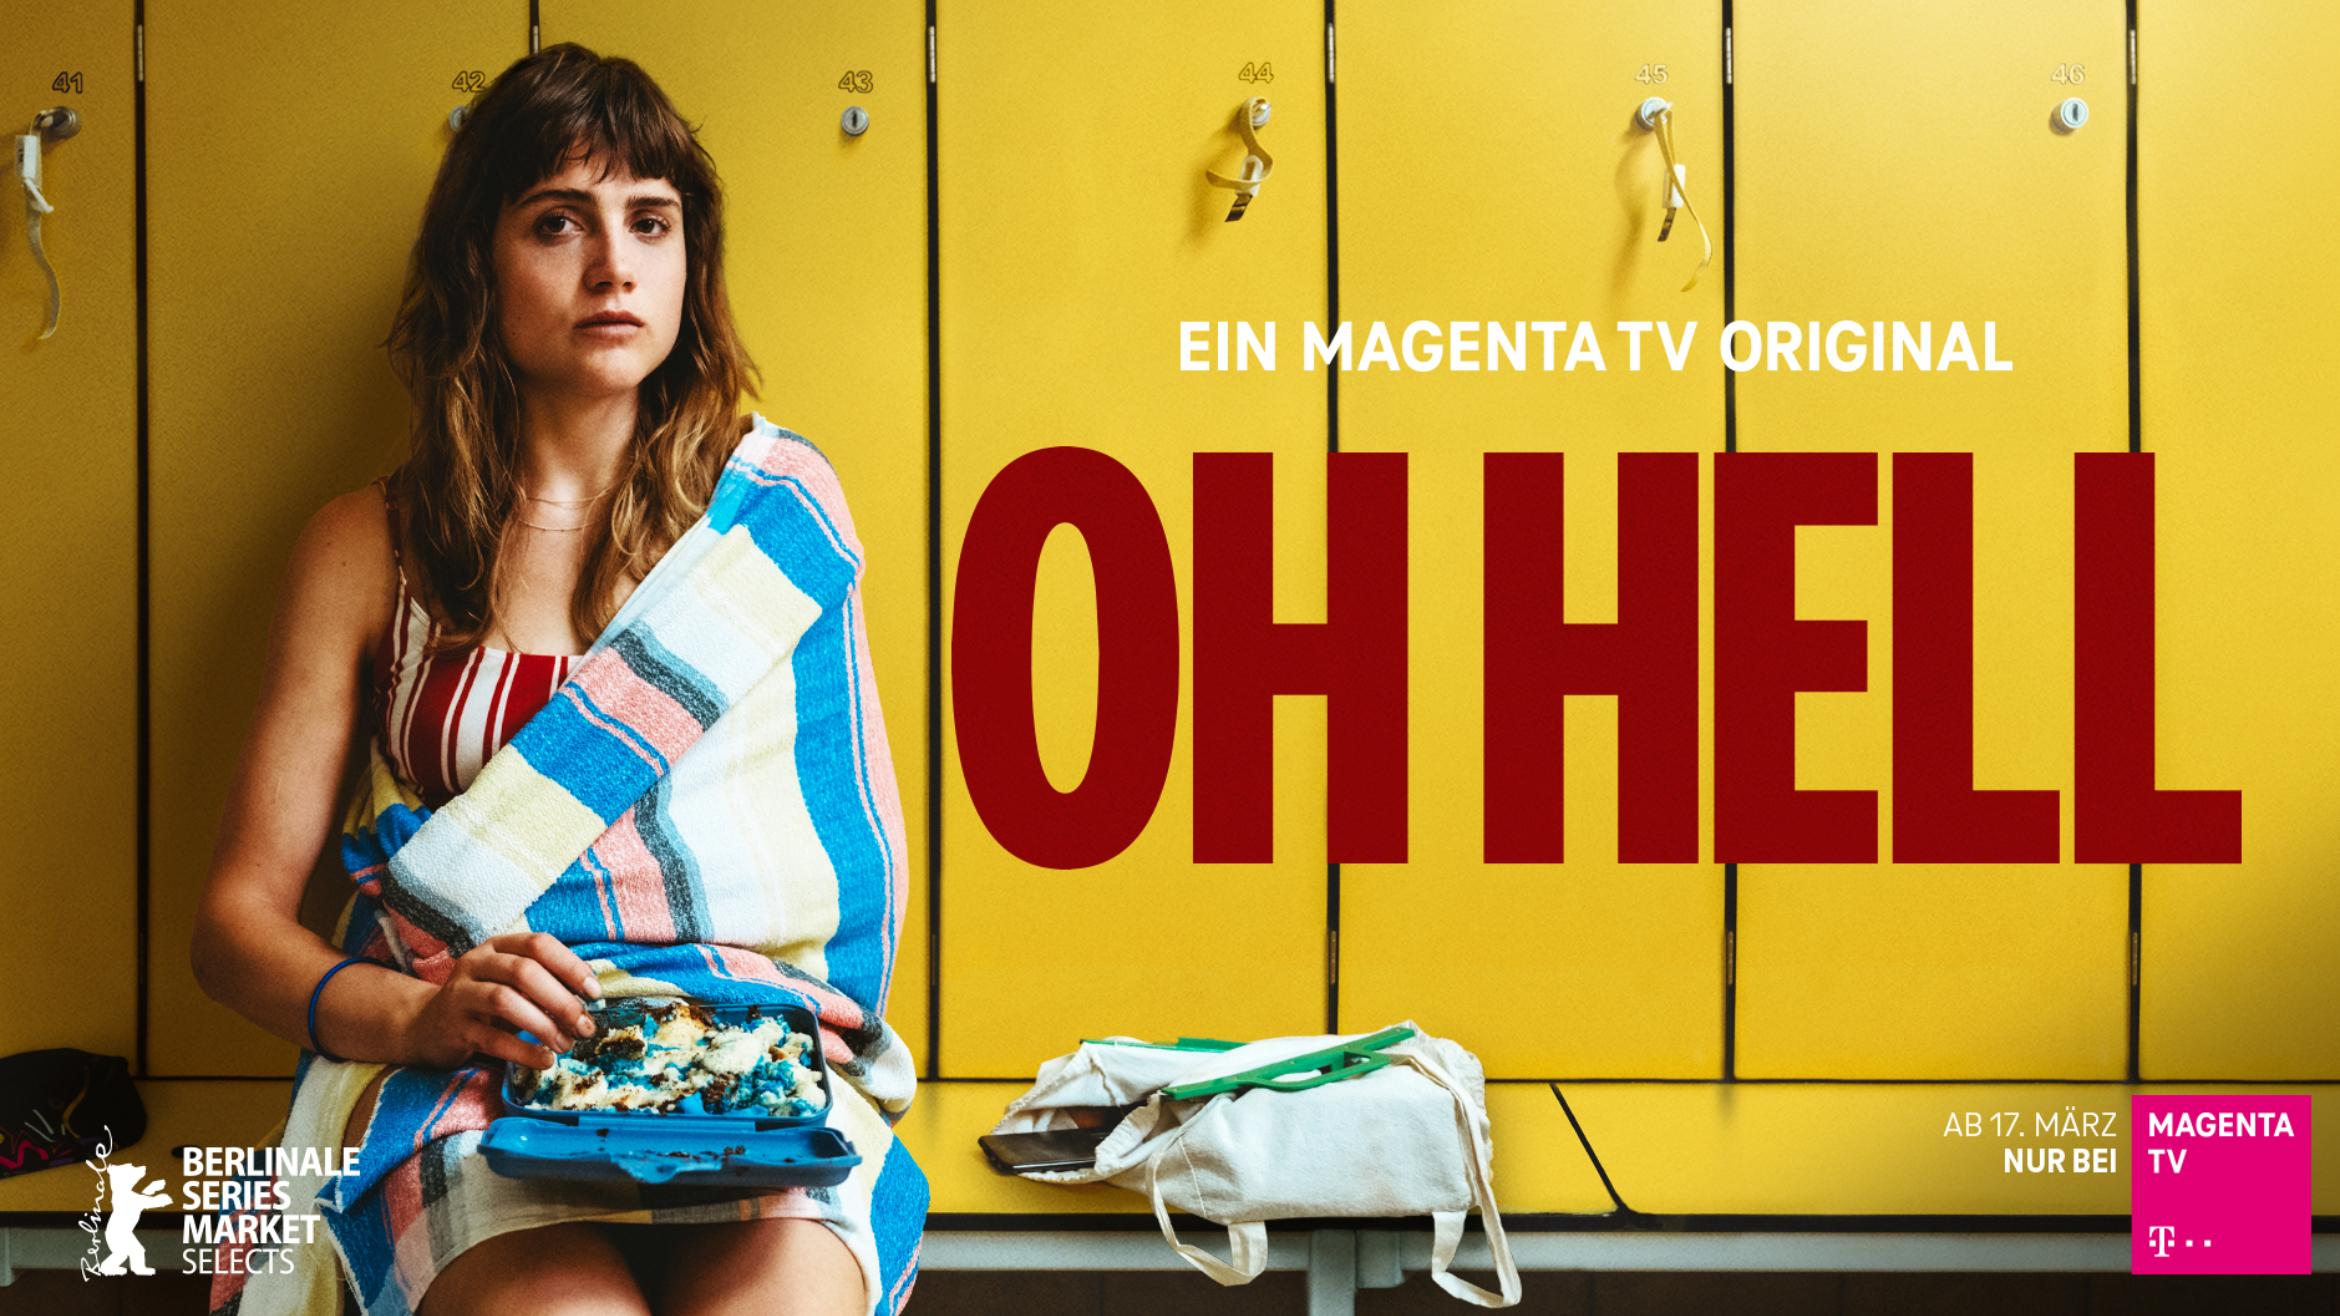 Die Drama-Serie "Oh Hell" ist ein Original von Magenta TV –